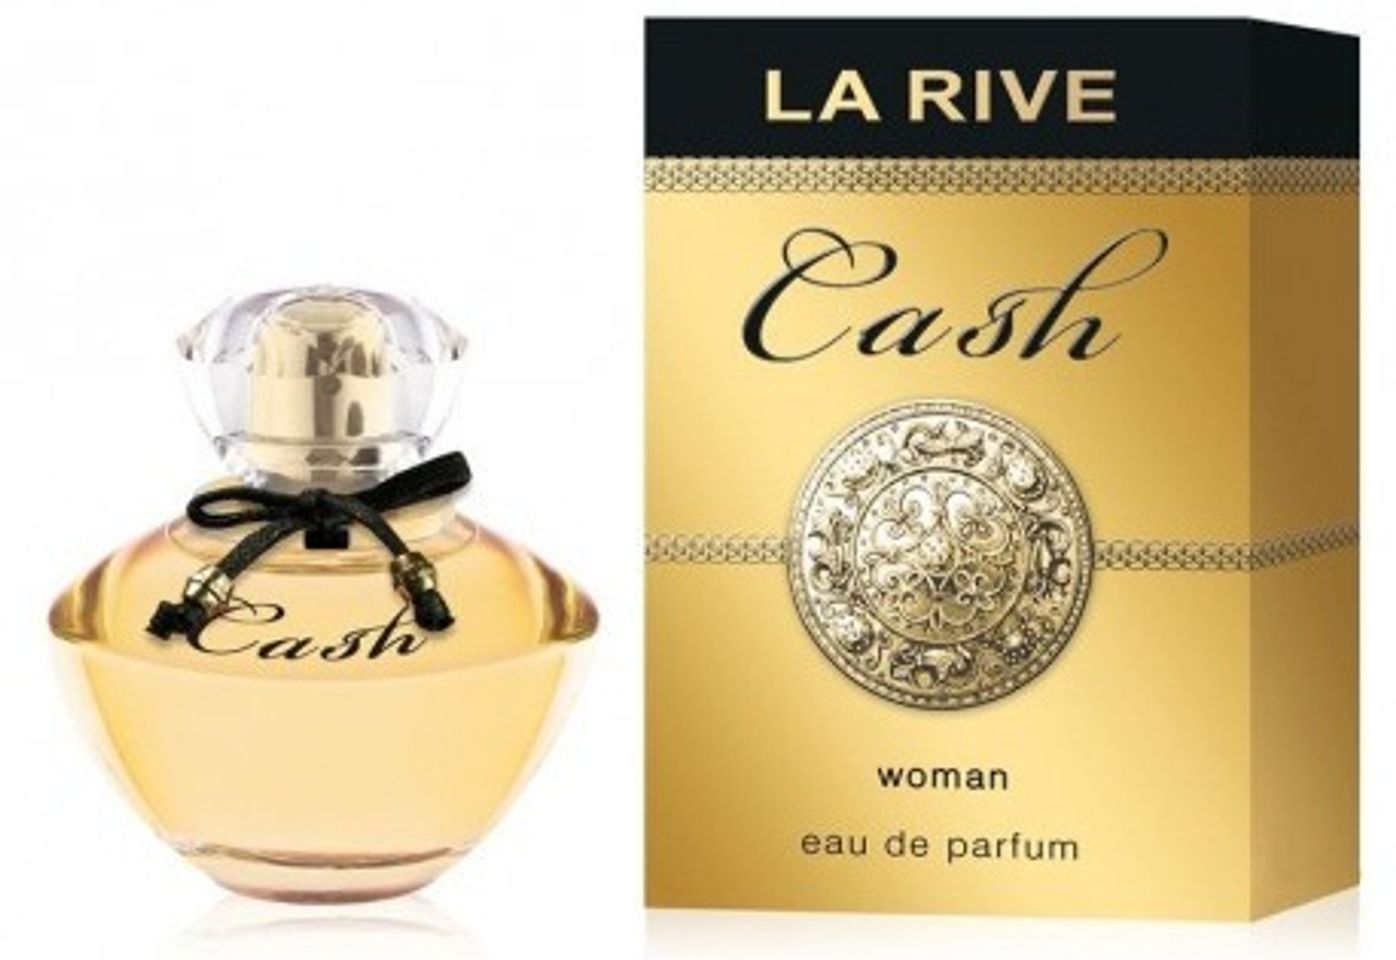 Nước hoa La Rive Cash Women 90ml dành cho nữ giới với hương thơm tươi trẻ, quyến rũ